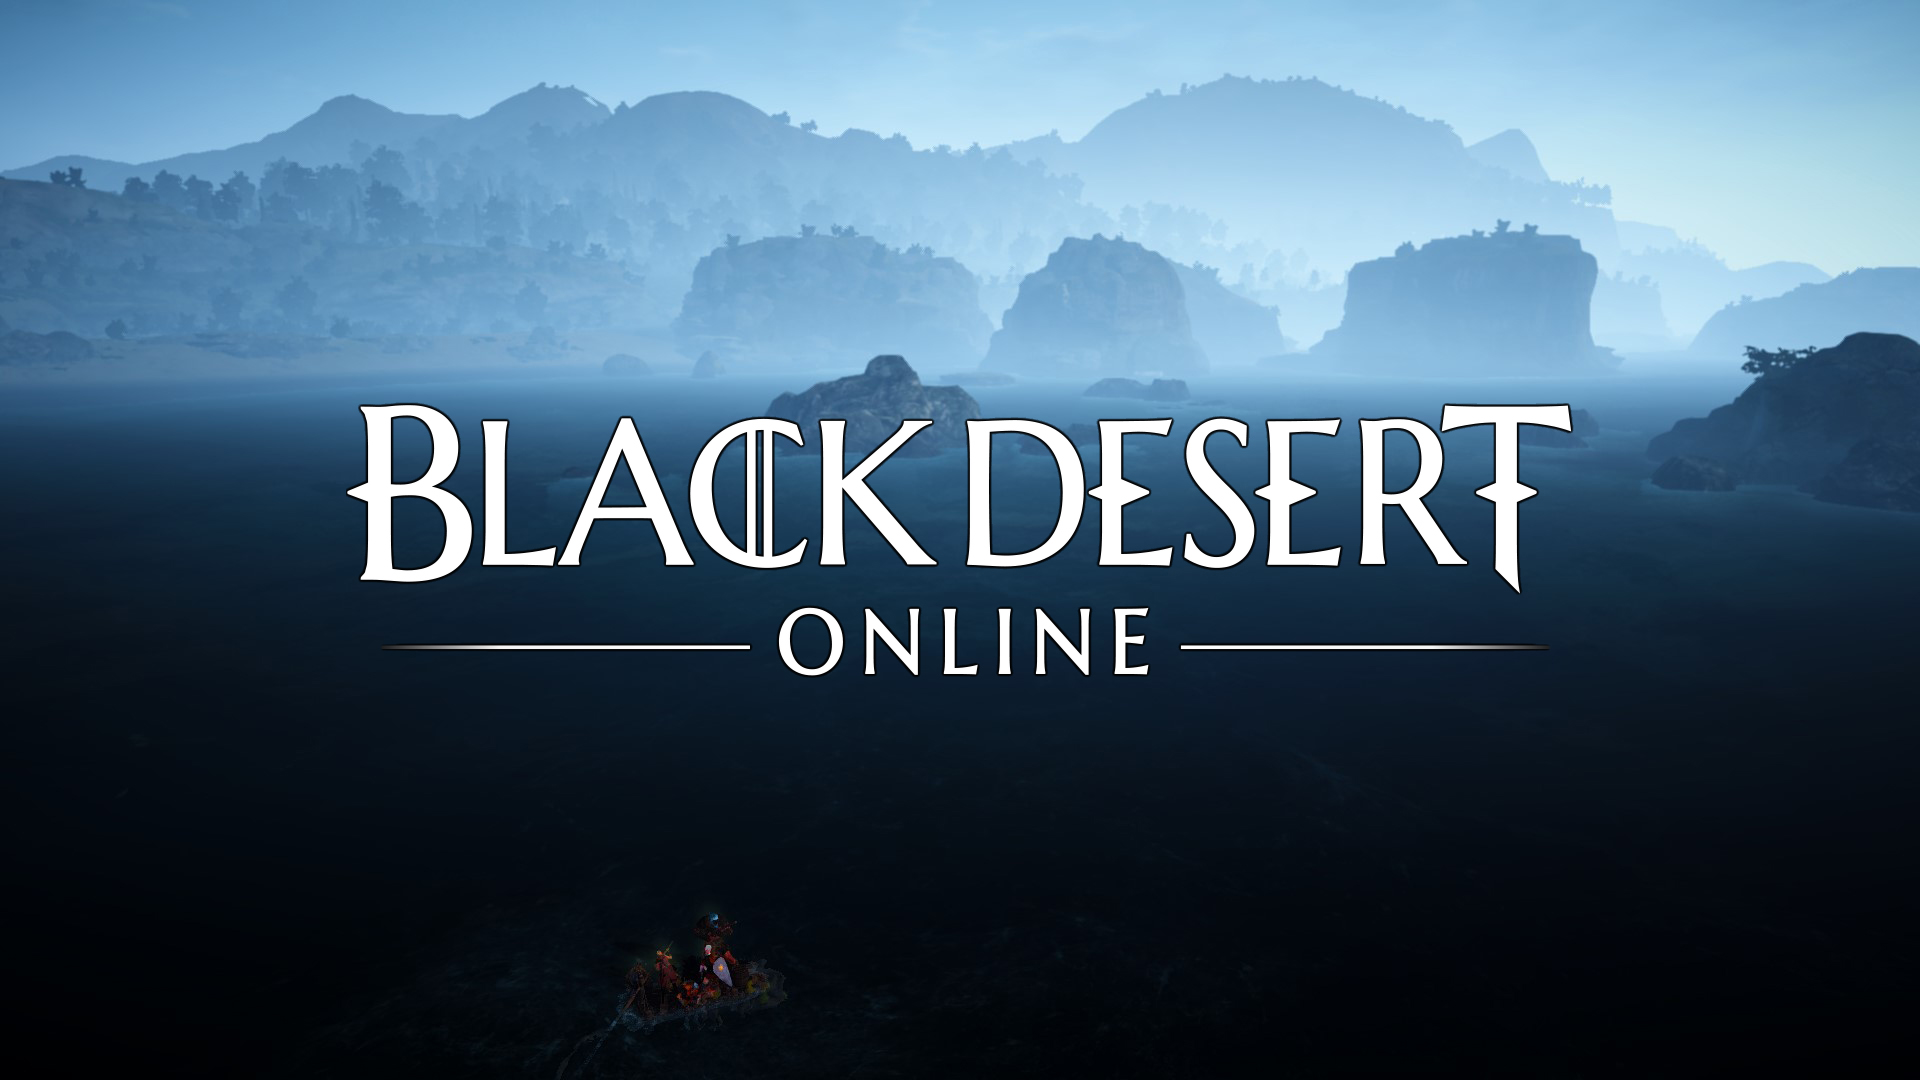 Black Desert porzuca starą technologię i DirectX 9